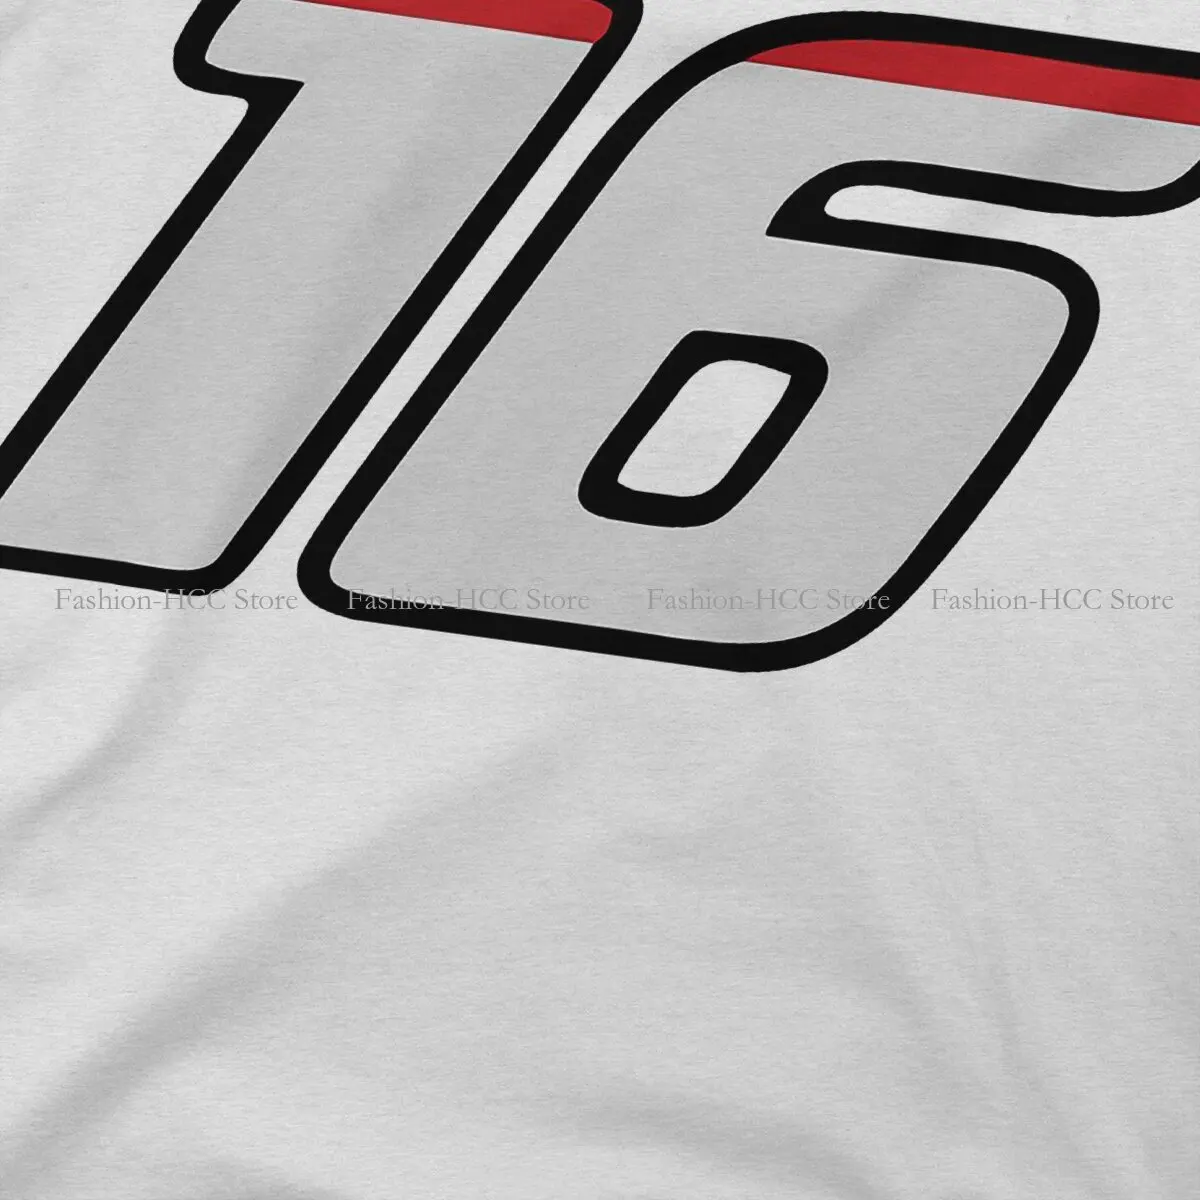 מספר 16 סחורה מיוחדת חולצת טי צ ' ארלס F1 איכותי היפ הופ גרפי חולצה דברים חמים למכירה פוליאסטר